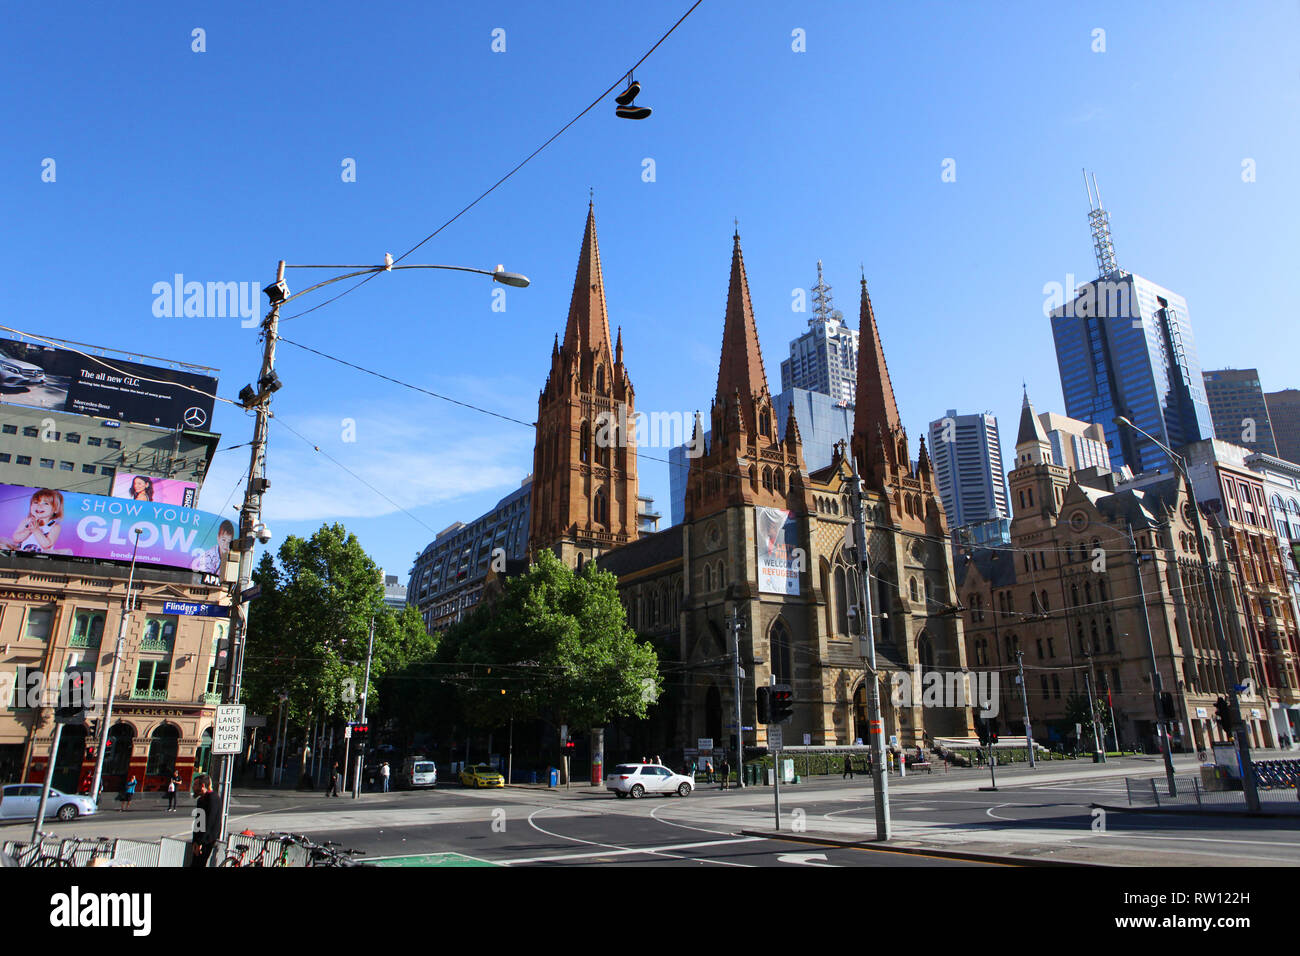 Visit Australia.  Scenics and views of Australia Stock Photo